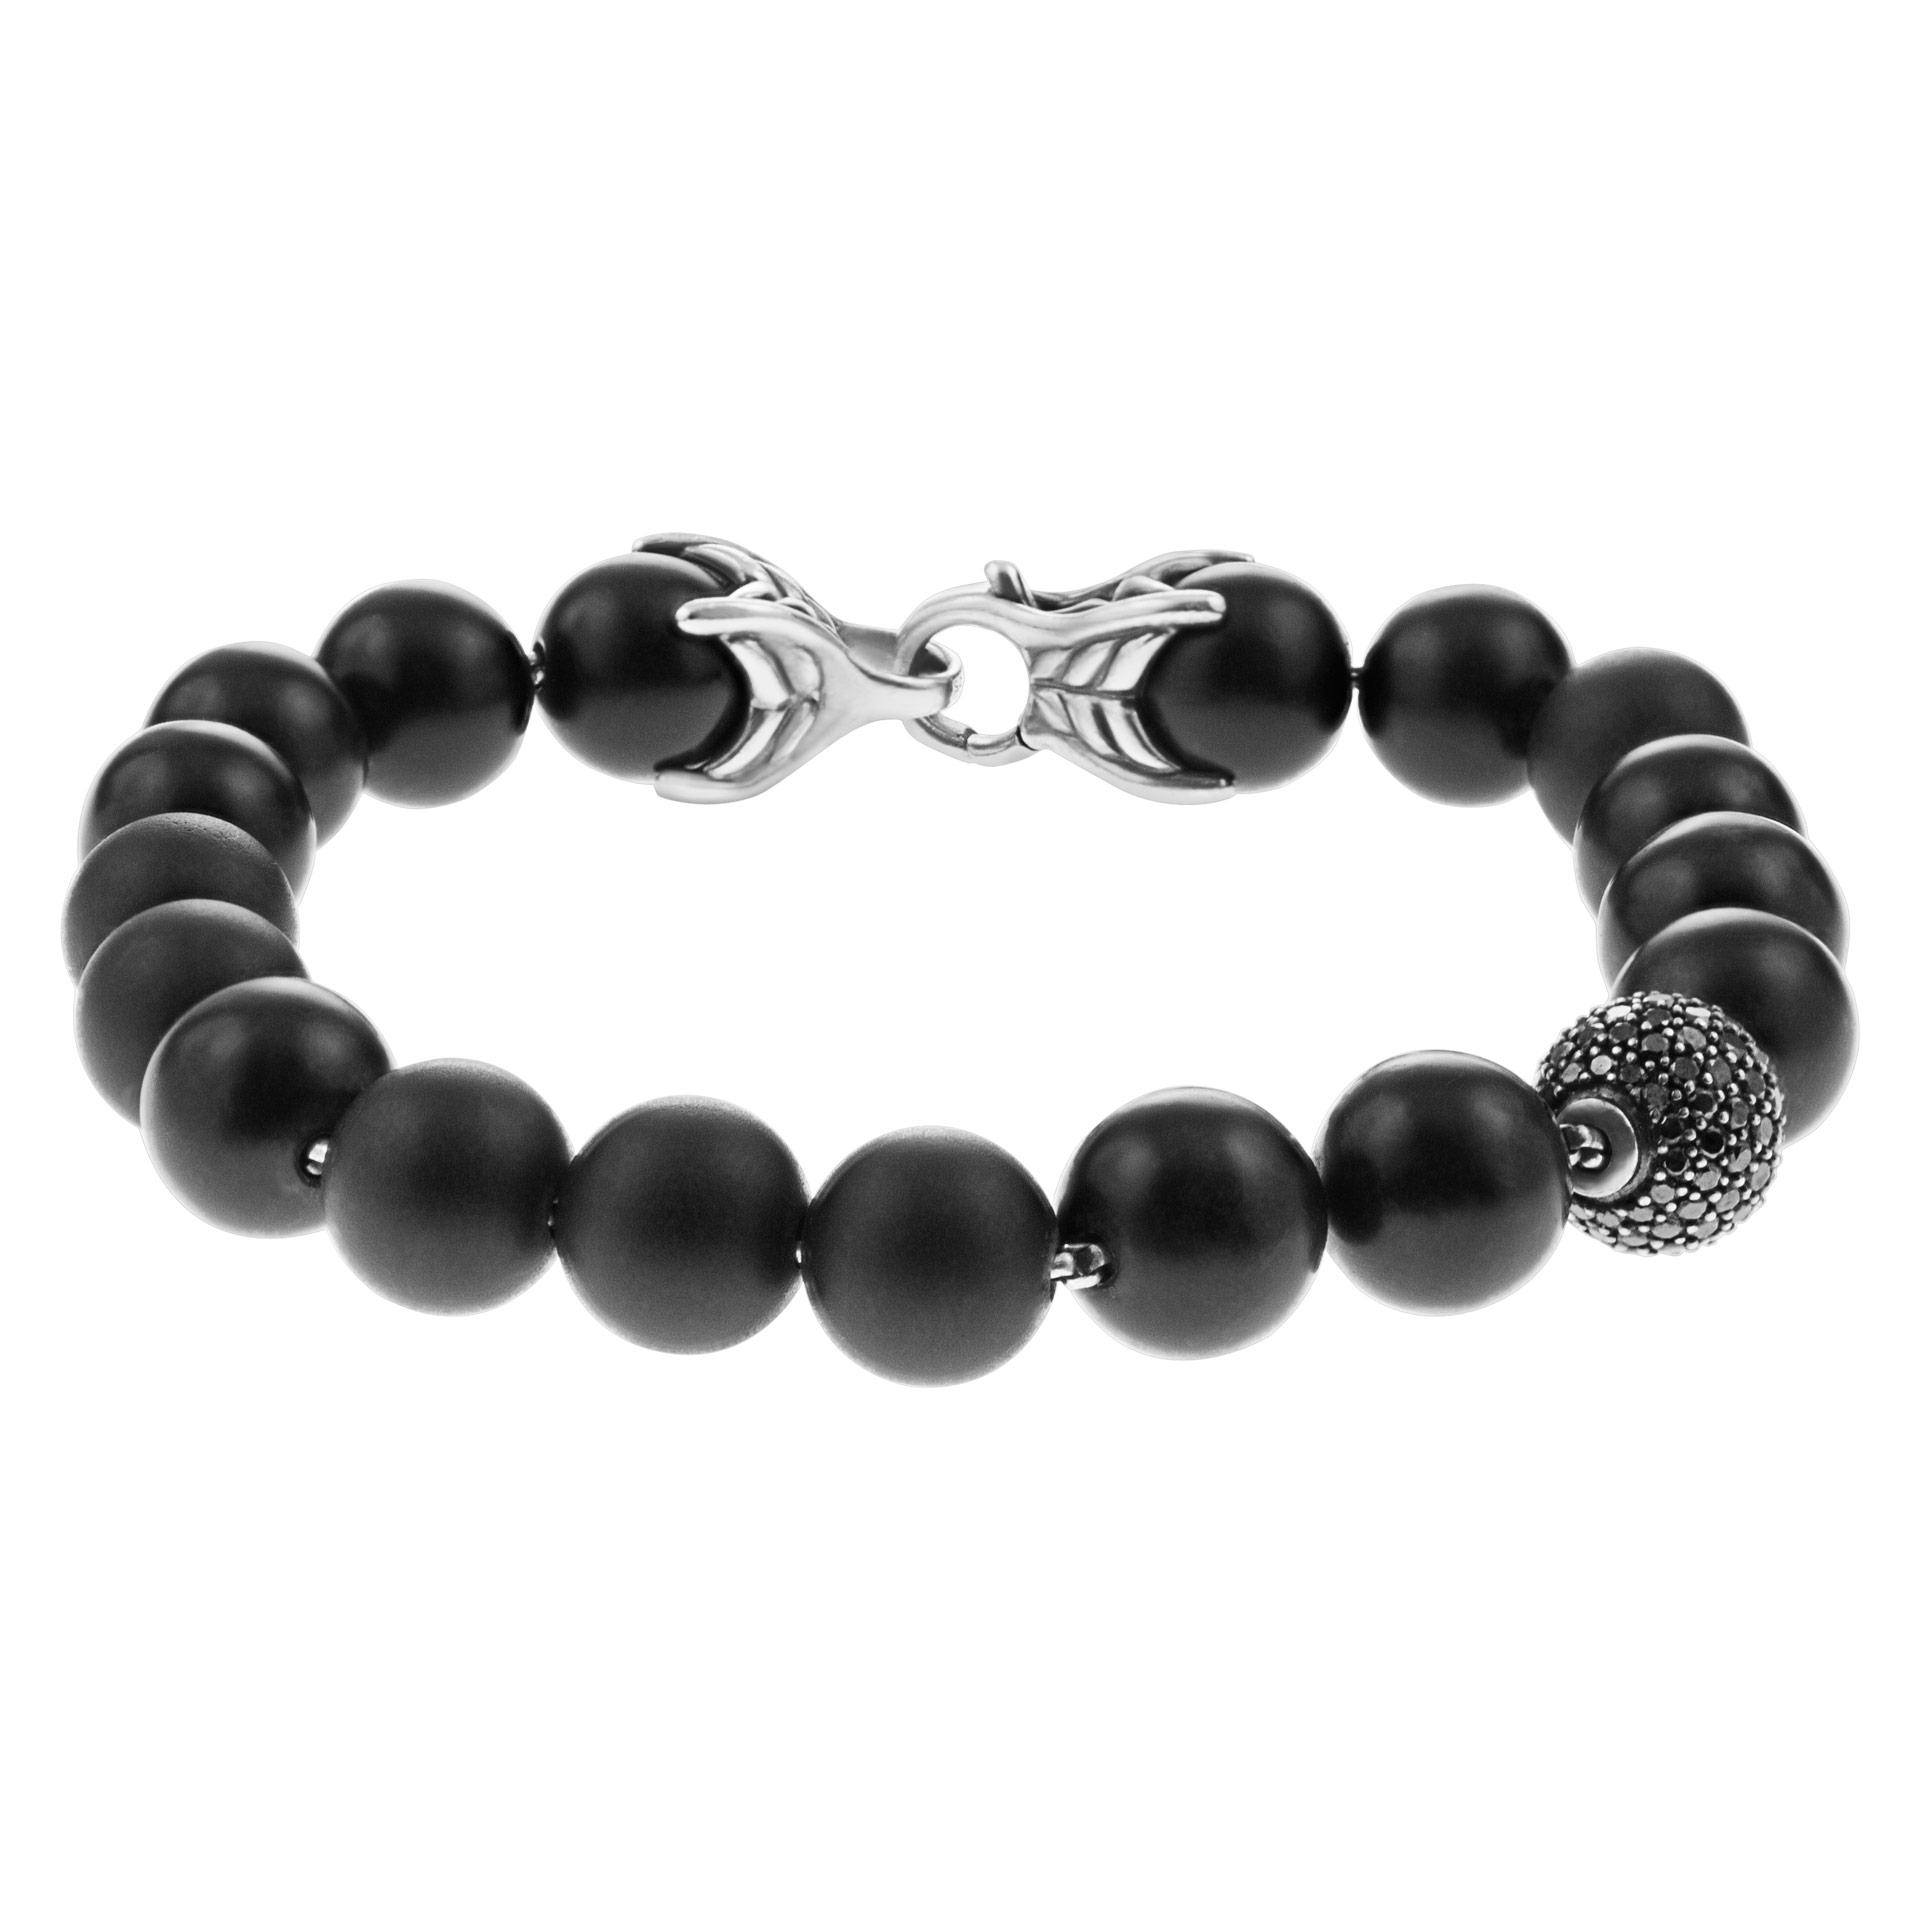 David Yurman spiritual beads bracelet image 1